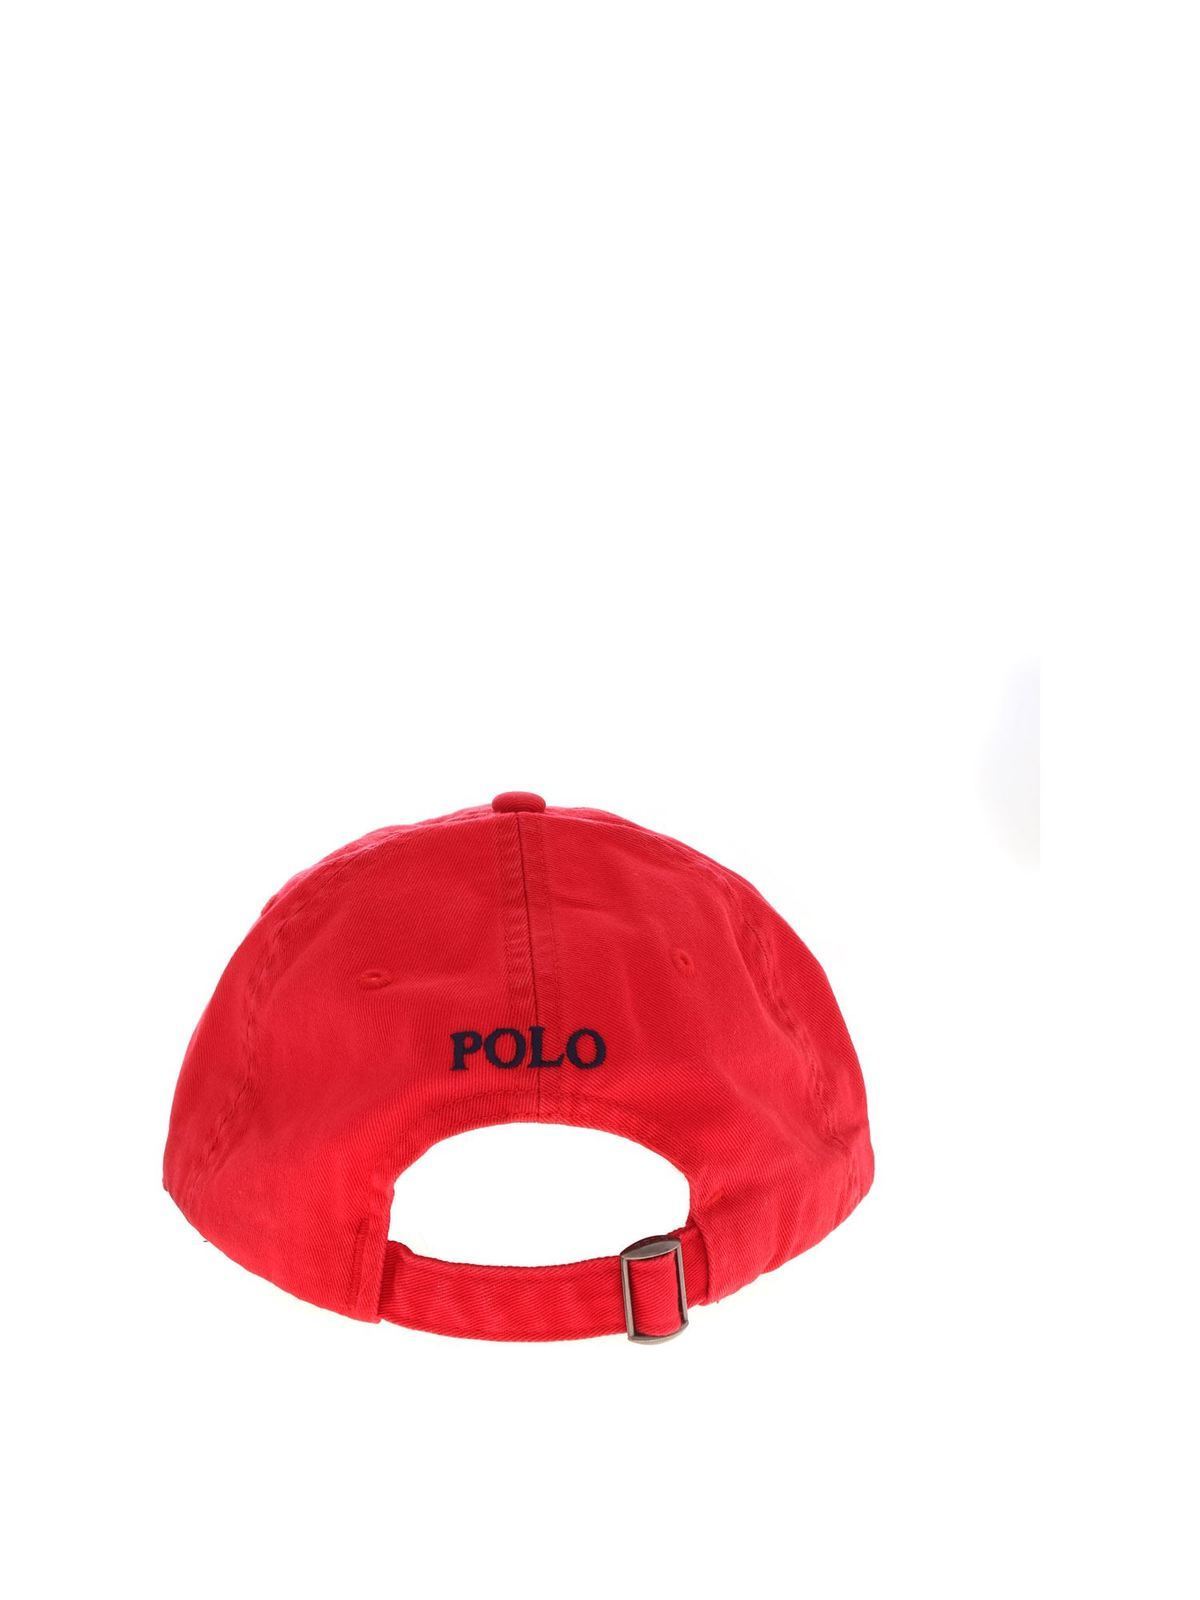 lade Graan Meditatief Hats & caps Polo Ralph Lauren - Logo baseball cap in red - 710548524002